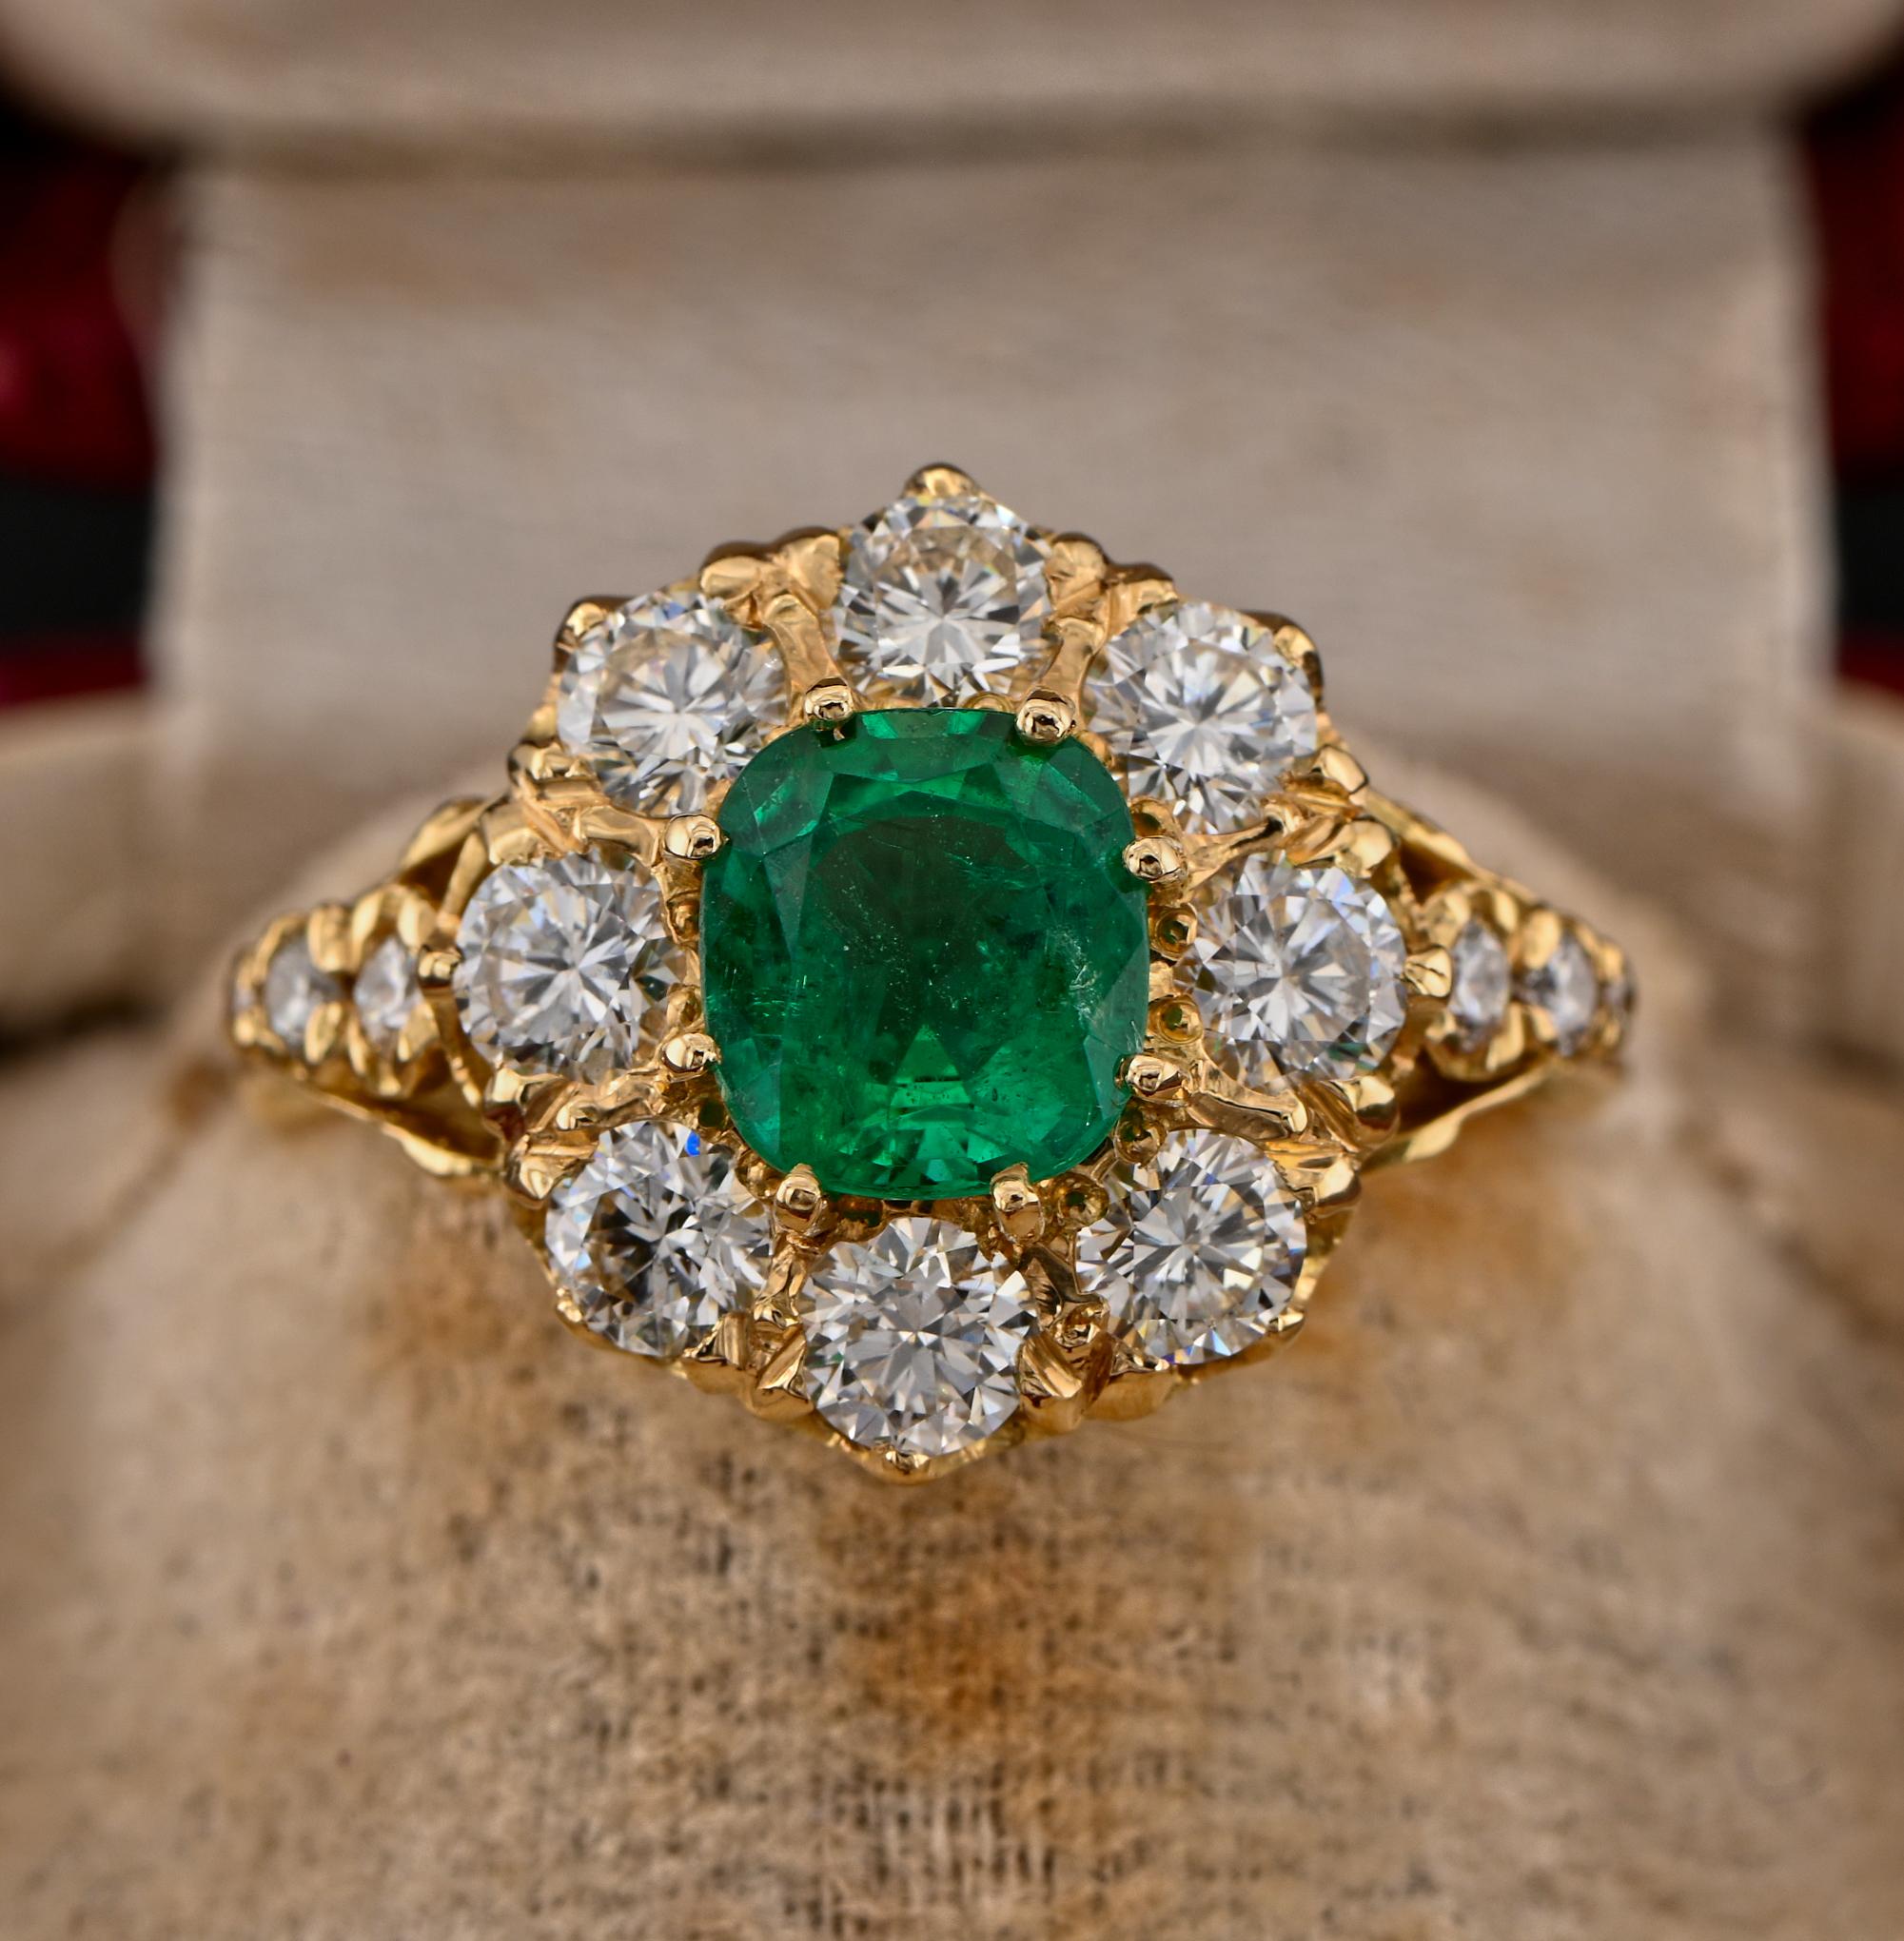 Ein wunderschöner und einzigartiger Smaragd- und Diamantring, englischer Herkunft, 1920 /1940 ca.
Hervorragend handgefertigt aus massivem 18KT Gold, gestempelt
Ansprechendes Design eines edlen Clusters, reich an Details und hervorragend umgesetzt,